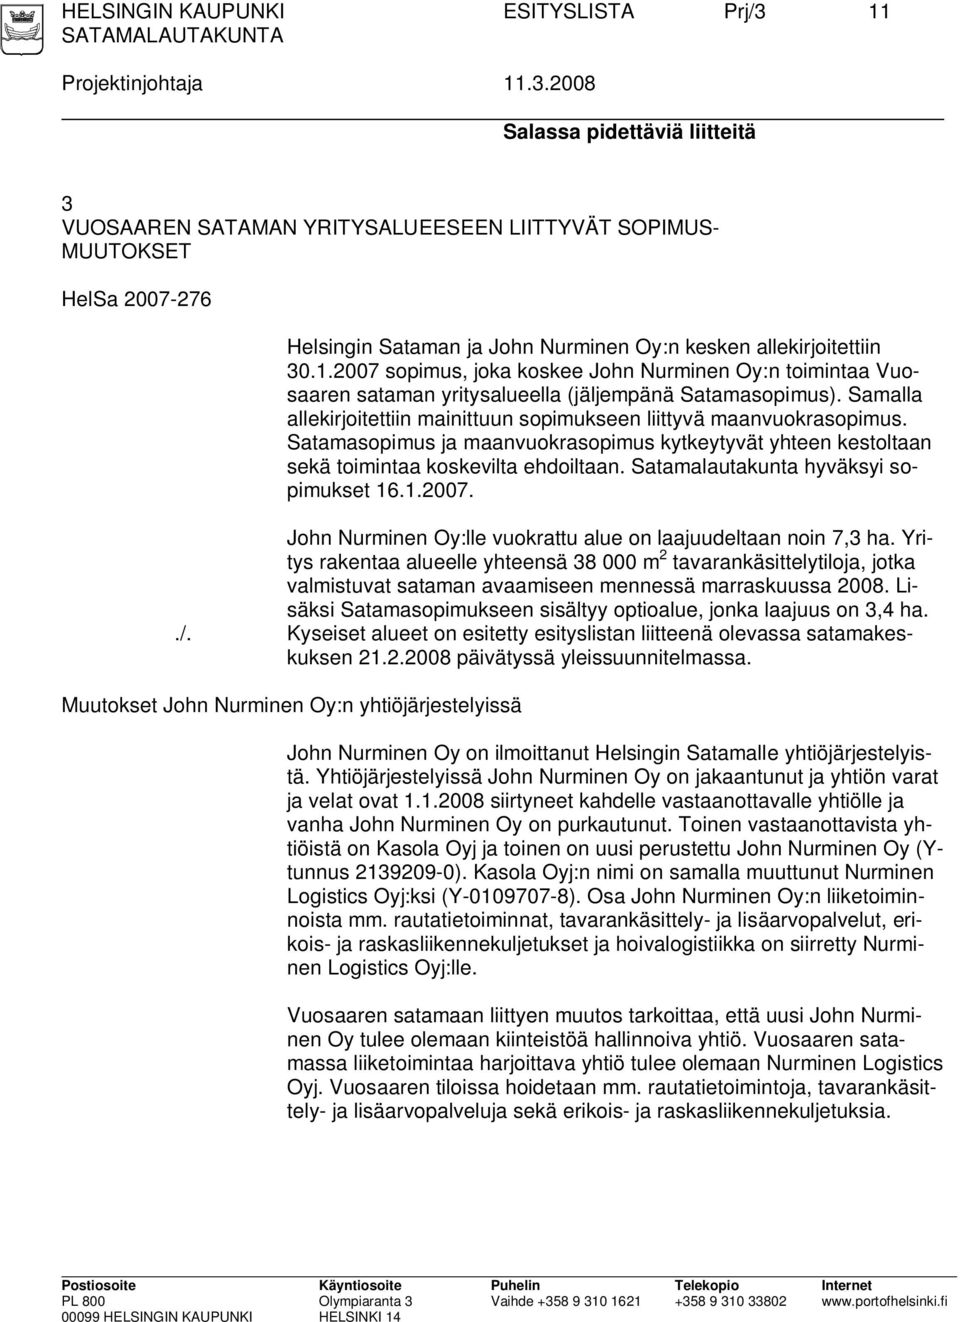 2008 Salassa pidettäviä liitteitä 3 VUOSAAREN SATAMAN YRITYSALUEESEEN LIITTYVÄT SOPIMUS- MUUTOKSET HelSa 2007-276 Helsingin Sataman ja John Nurminen Oy:n kesken allekirjoitettiin 30.1.